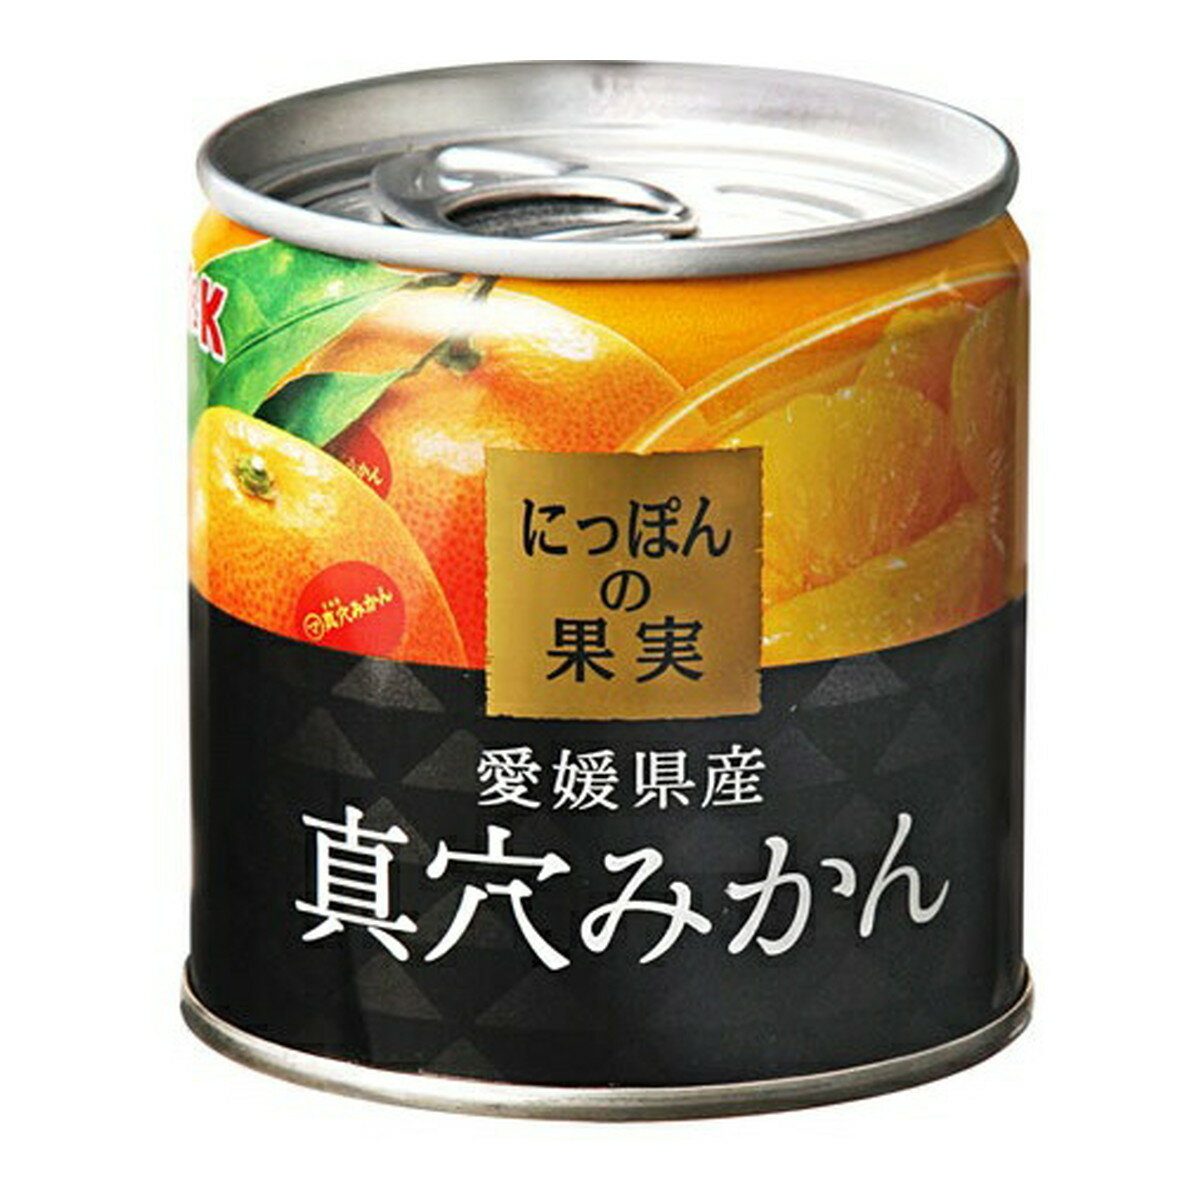 KK にっぽんの果実 愛媛県産 真穴みかん 缶詰